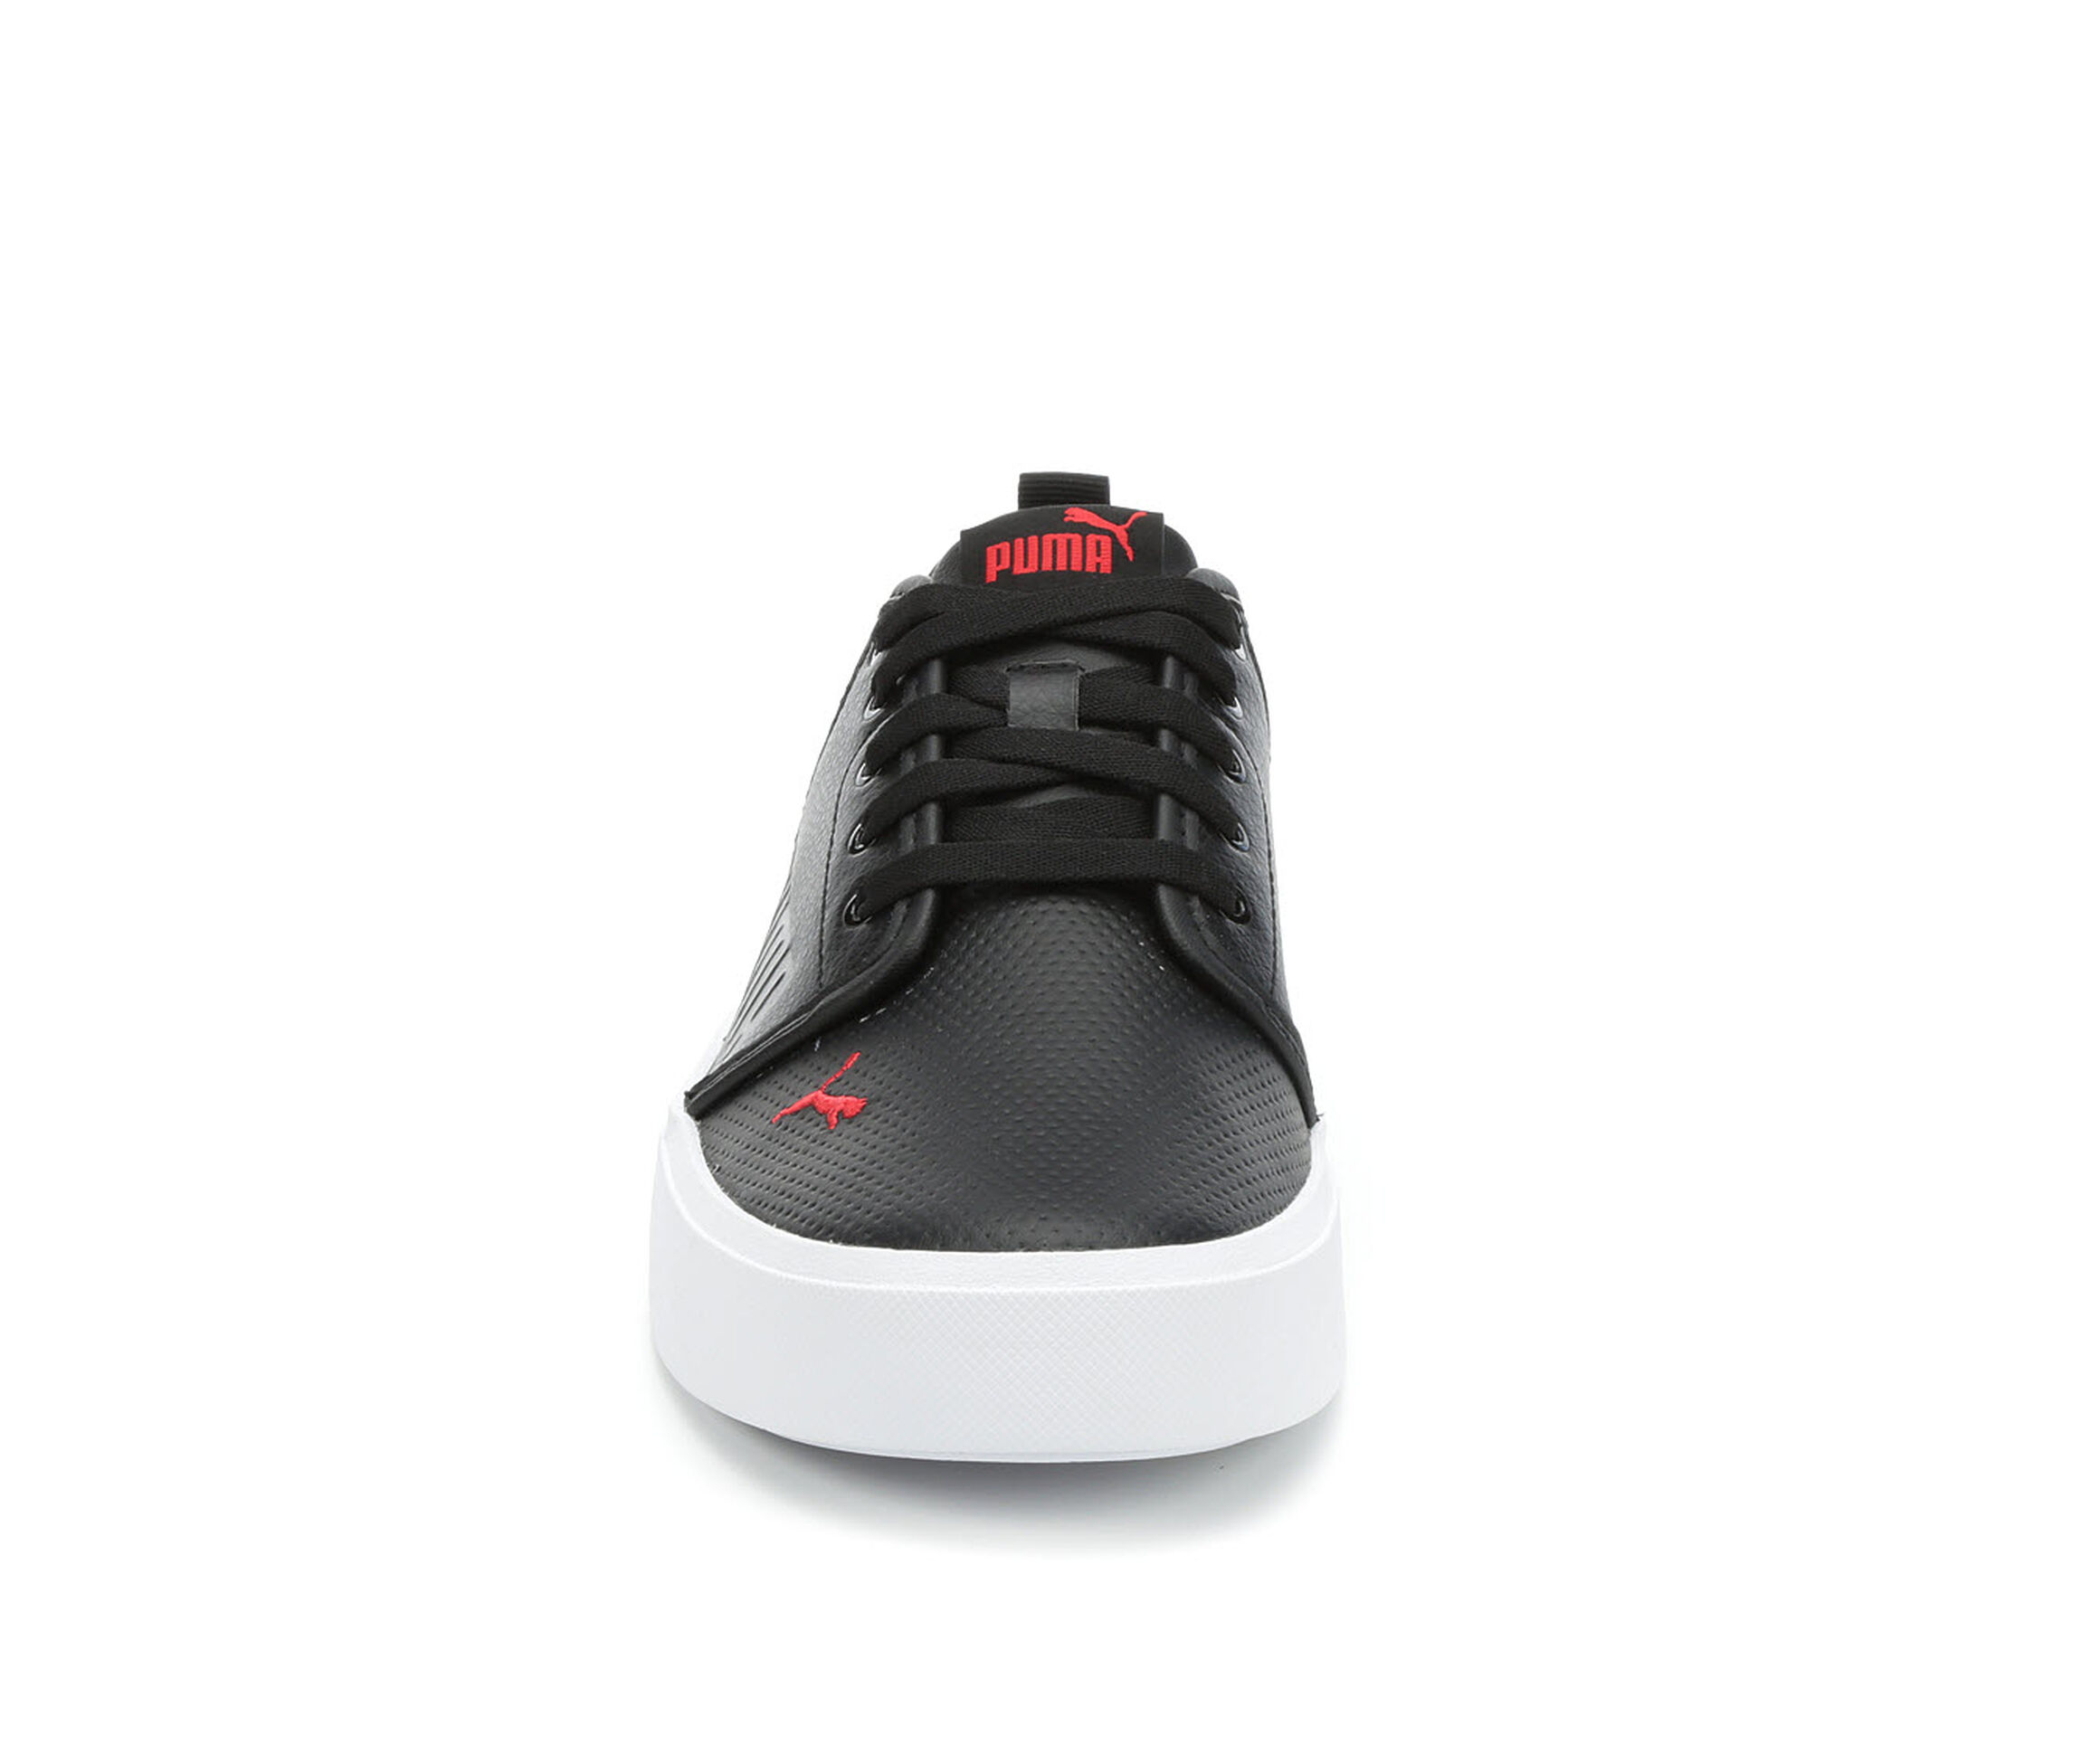 Men's Puma El Rey II Perf Leather Skate Shoes